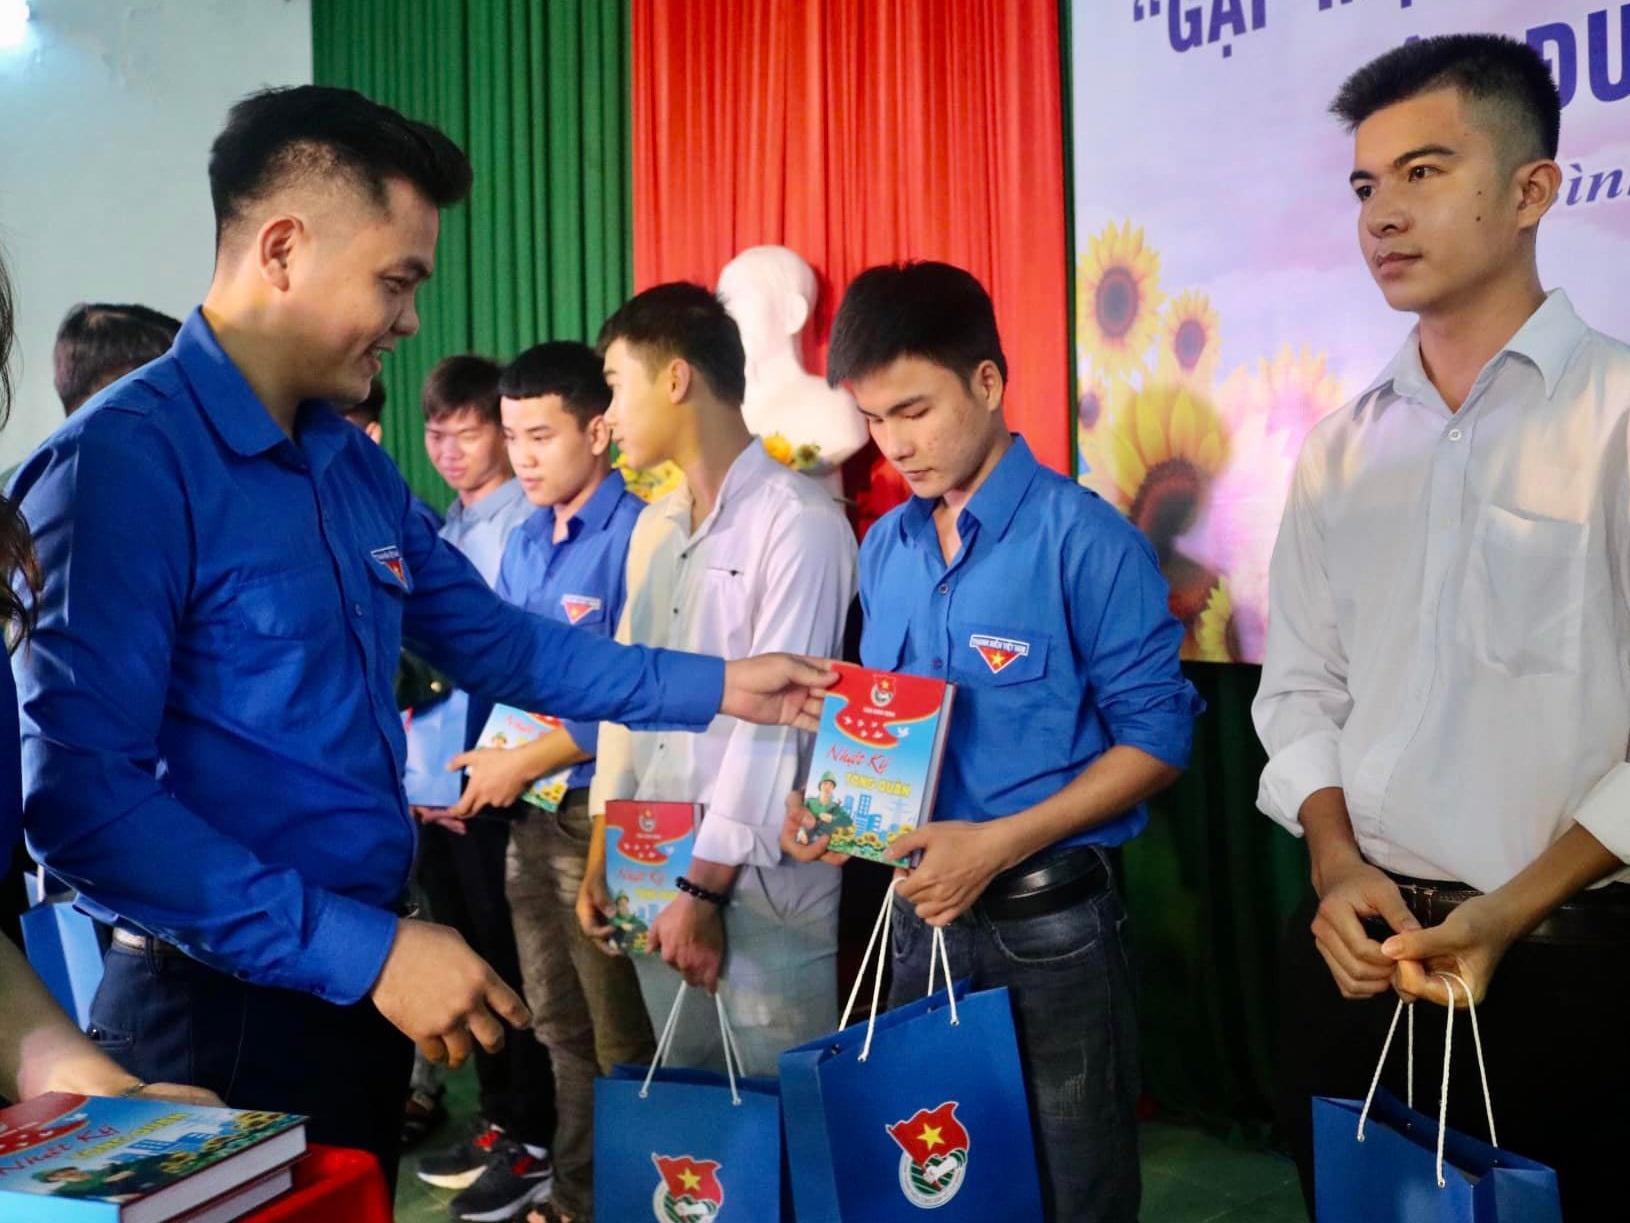 Tỉnh đoàn Bình Định tổ chức tọa đàm gặp mặt thanh niên tình nguyện nhập ngũ - ảnh 2